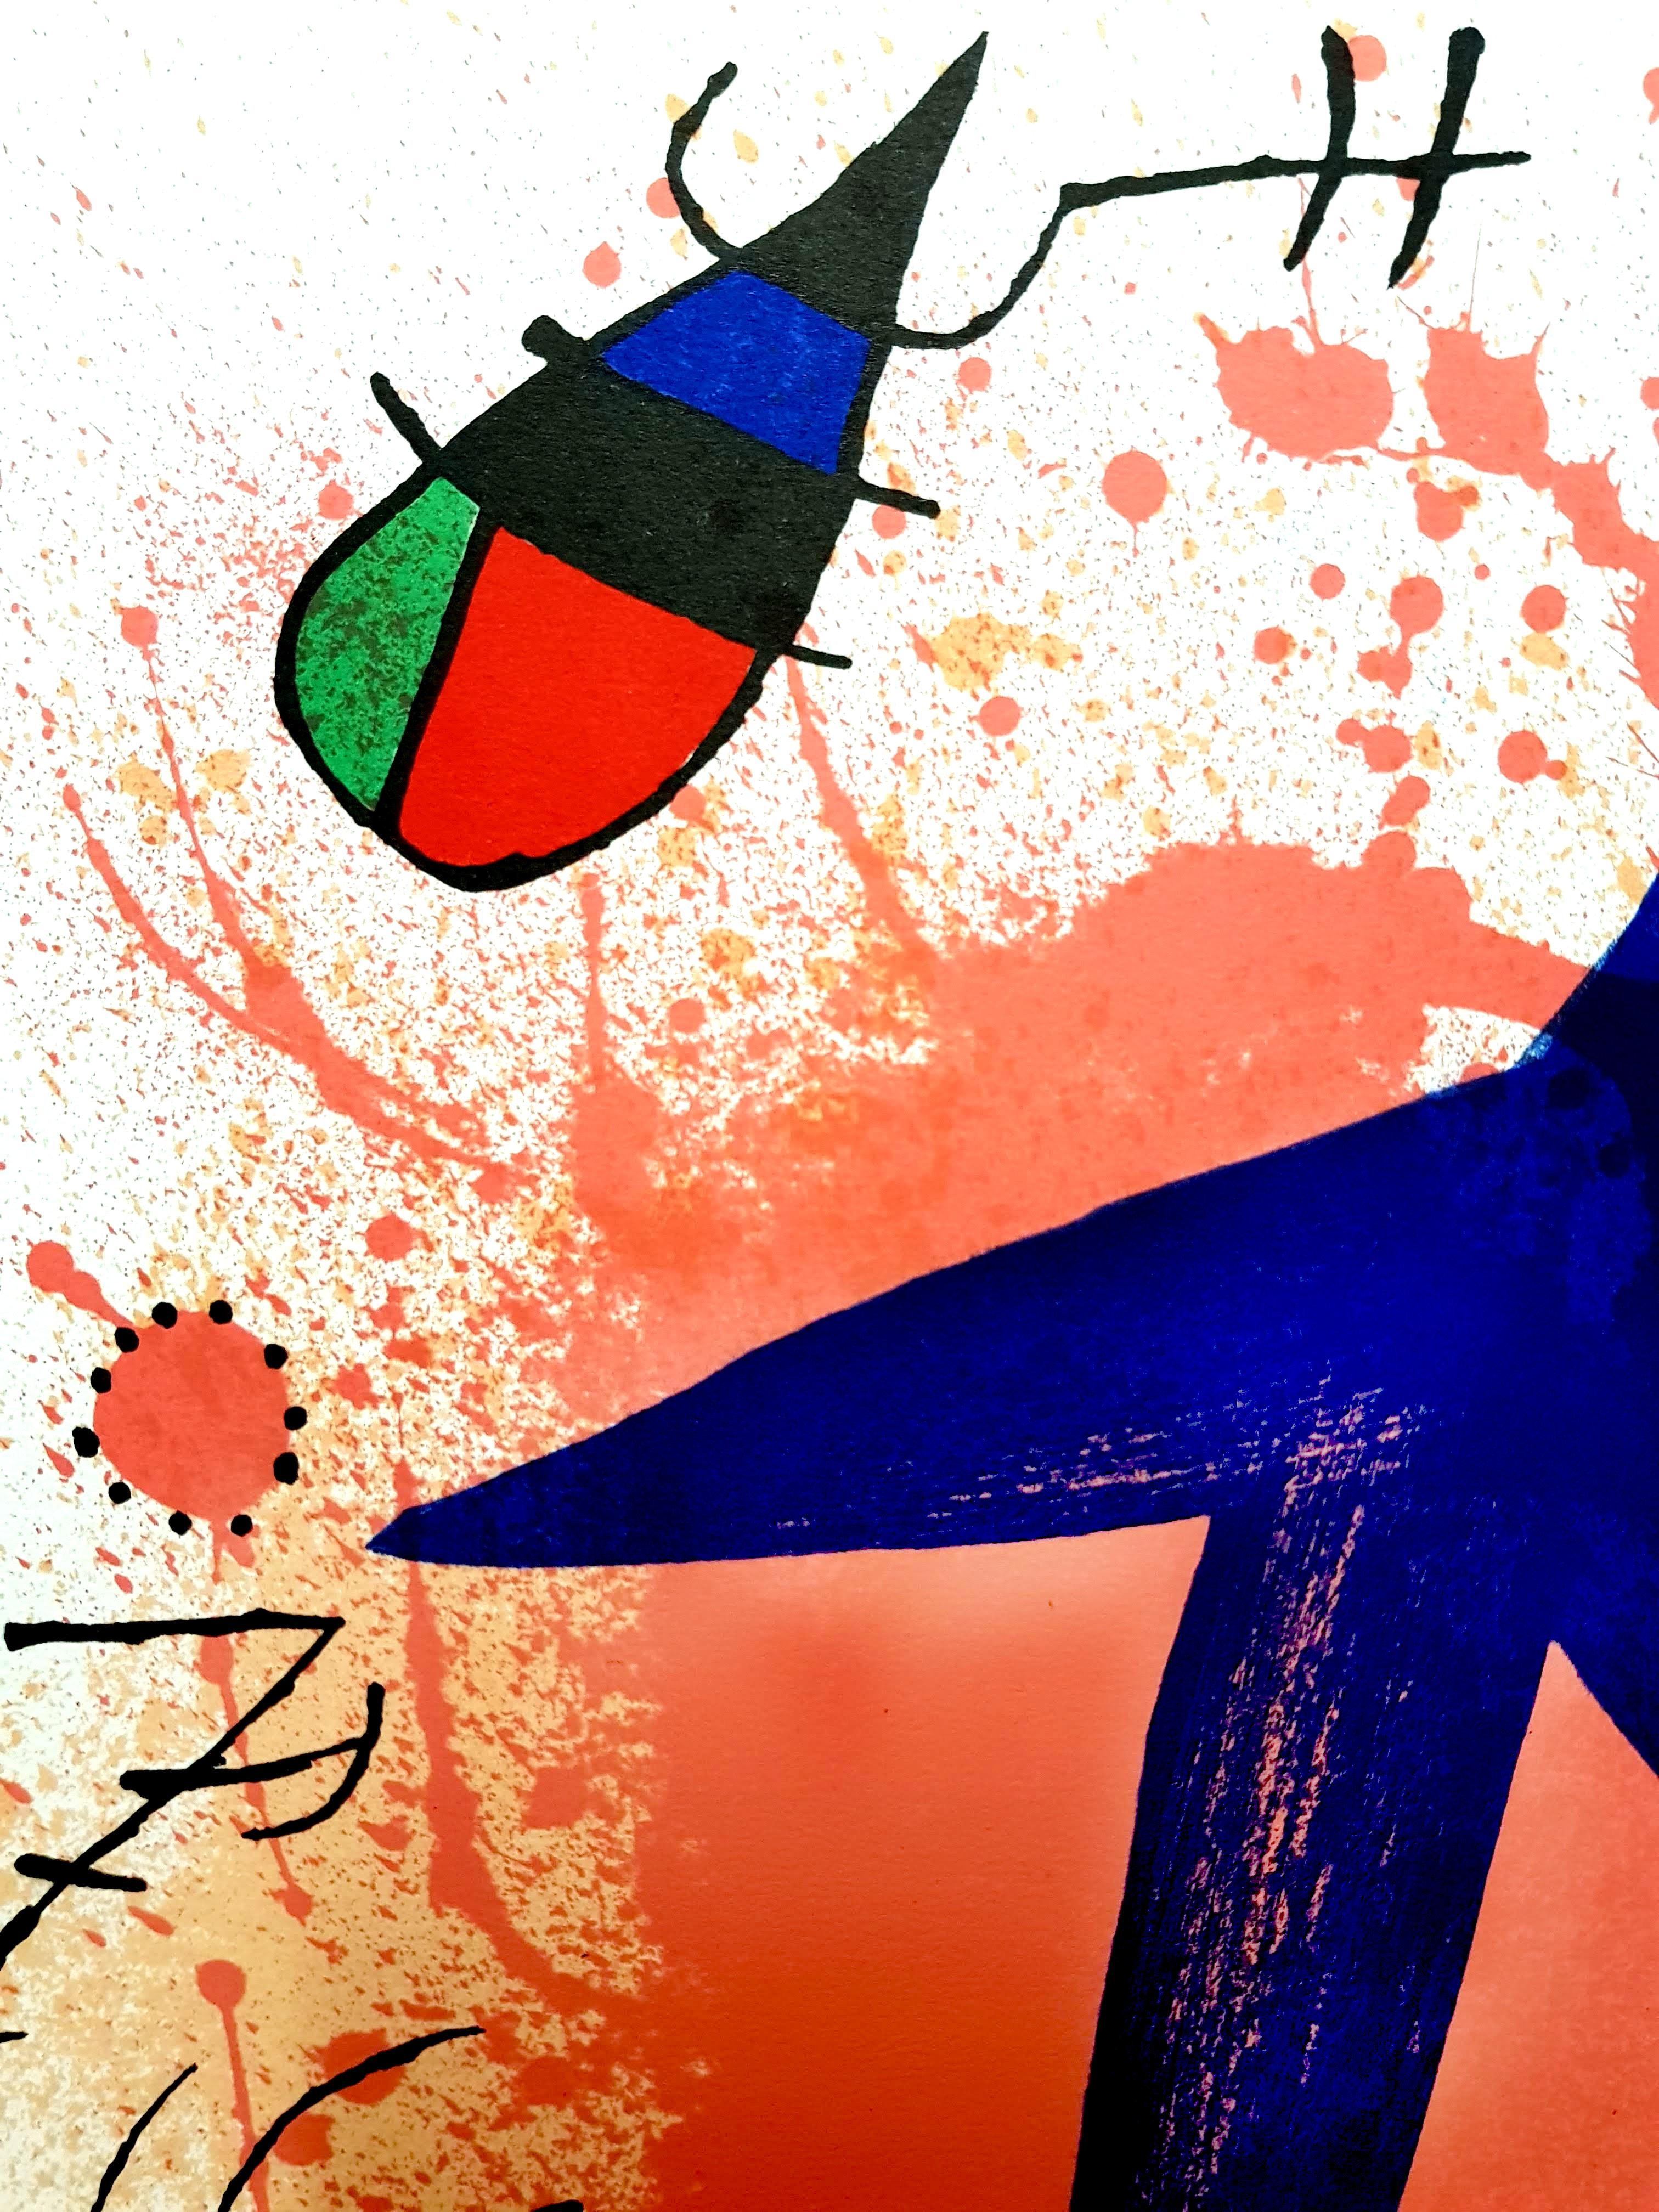 Joan Miro Miro Lithographie originale abstraite
Artiste : Joan Miro
Médium : Lithographie originale sur vélin de Rives
Portefeuille : Miro Lithographe V
Année : 1981
Edition : 5000
Taille de l'image : 10